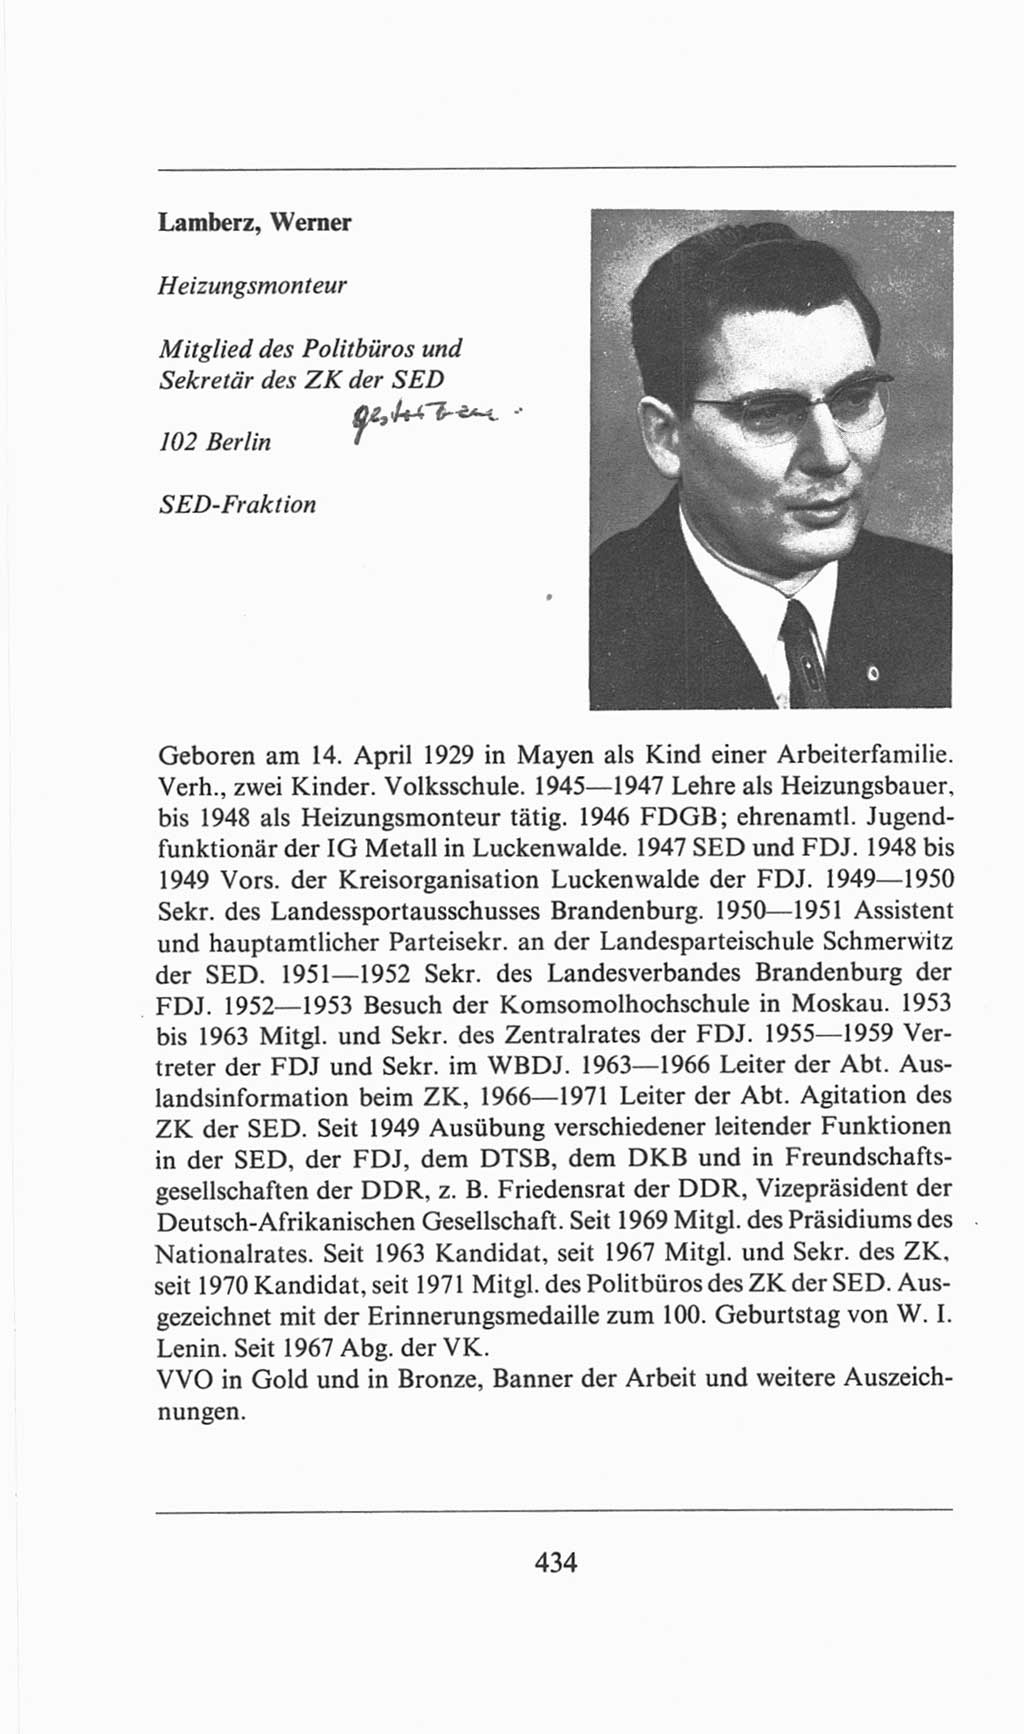 Volkskammer (VK) der Deutschen Demokratischen Republik (DDR), 6. Wahlperiode 1971-1976, Seite 434 (VK. DDR 6. WP. 1971-1976, S. 434)